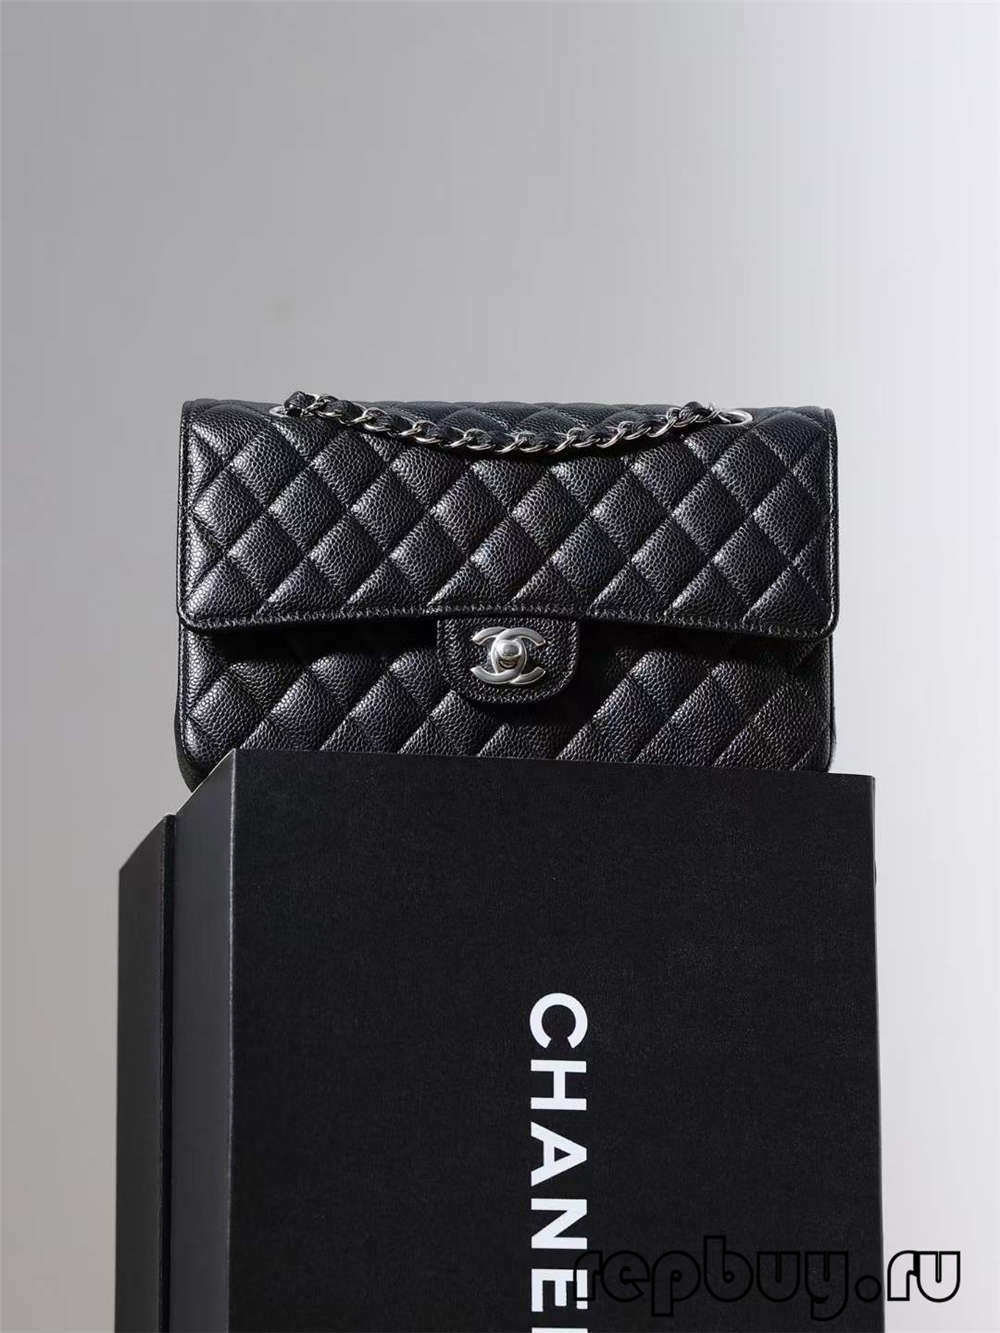 Завжди бестселер Shebag——Найкраща репліка класичної середньої 25 см класичної сумки Chanel (Chanel CF Caviar Leather Black) (оновлено 2022 р.) — Інтернет-магазин підробленої сумки Louis Vuitton найкращої якості, копія дизайнерської сумки ru